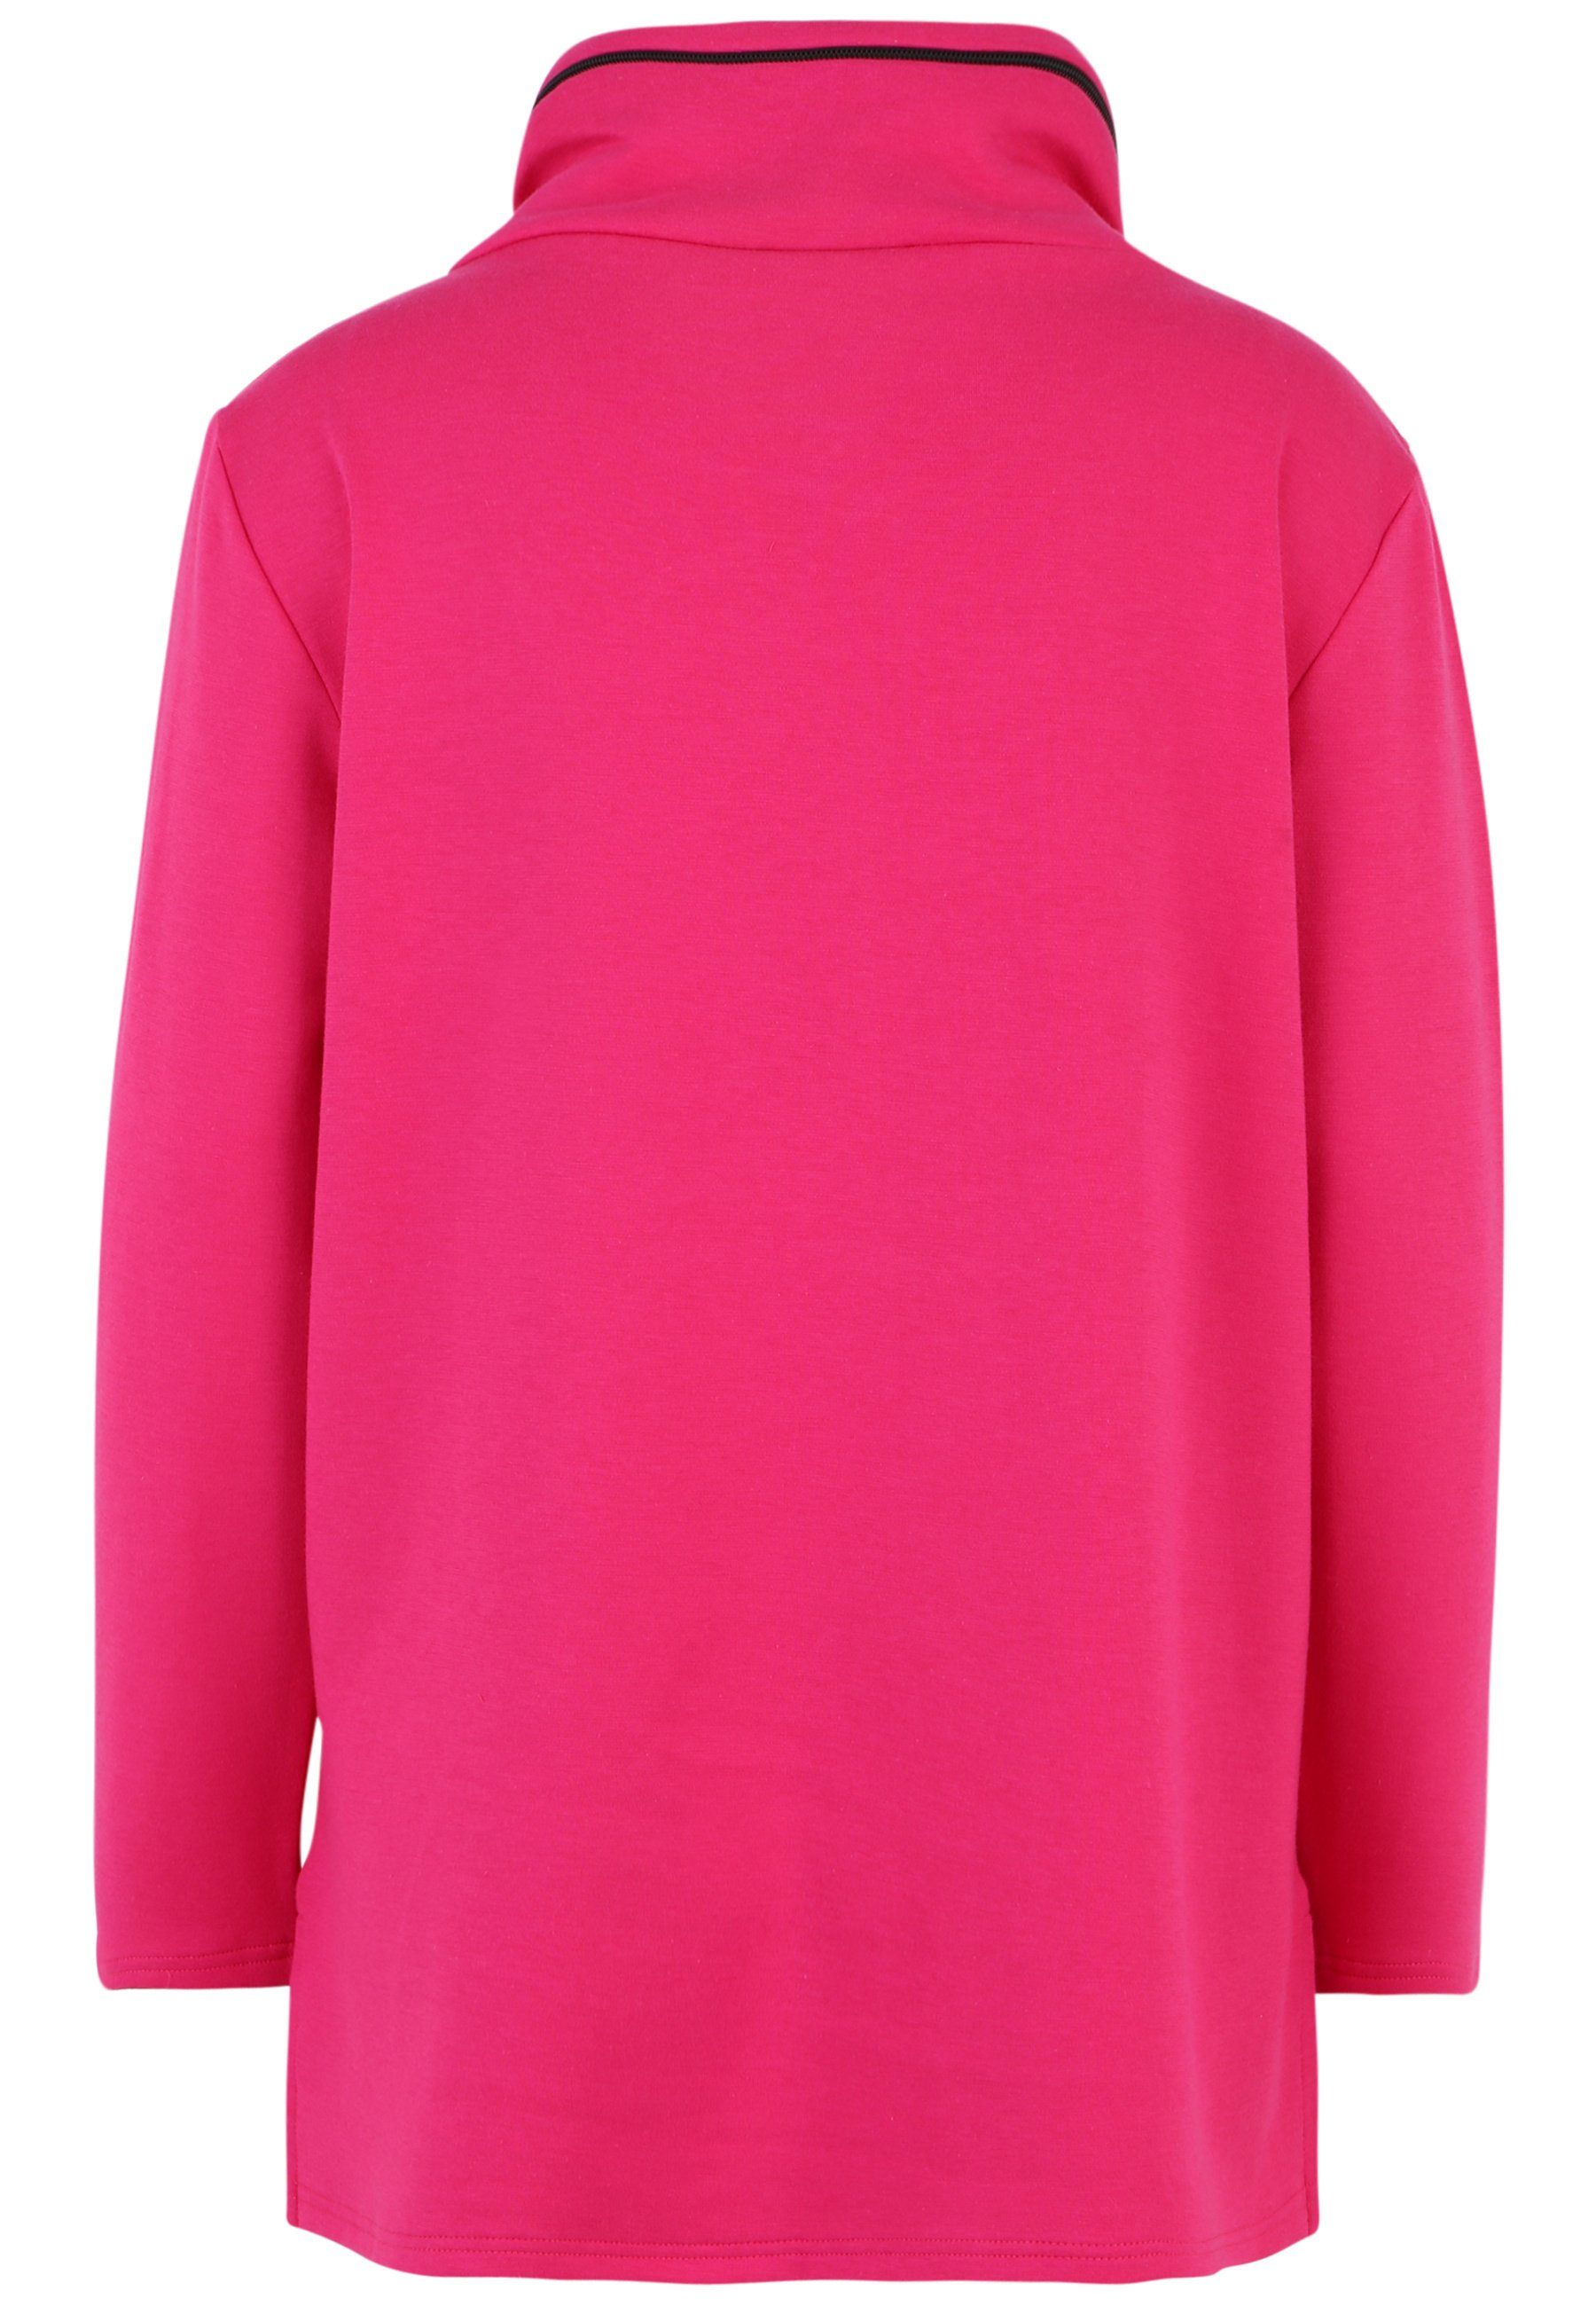 Doris Streich mit mit Nylon-Tasche modernem Longshirt Sweatshirt PINK Motivprint und Design